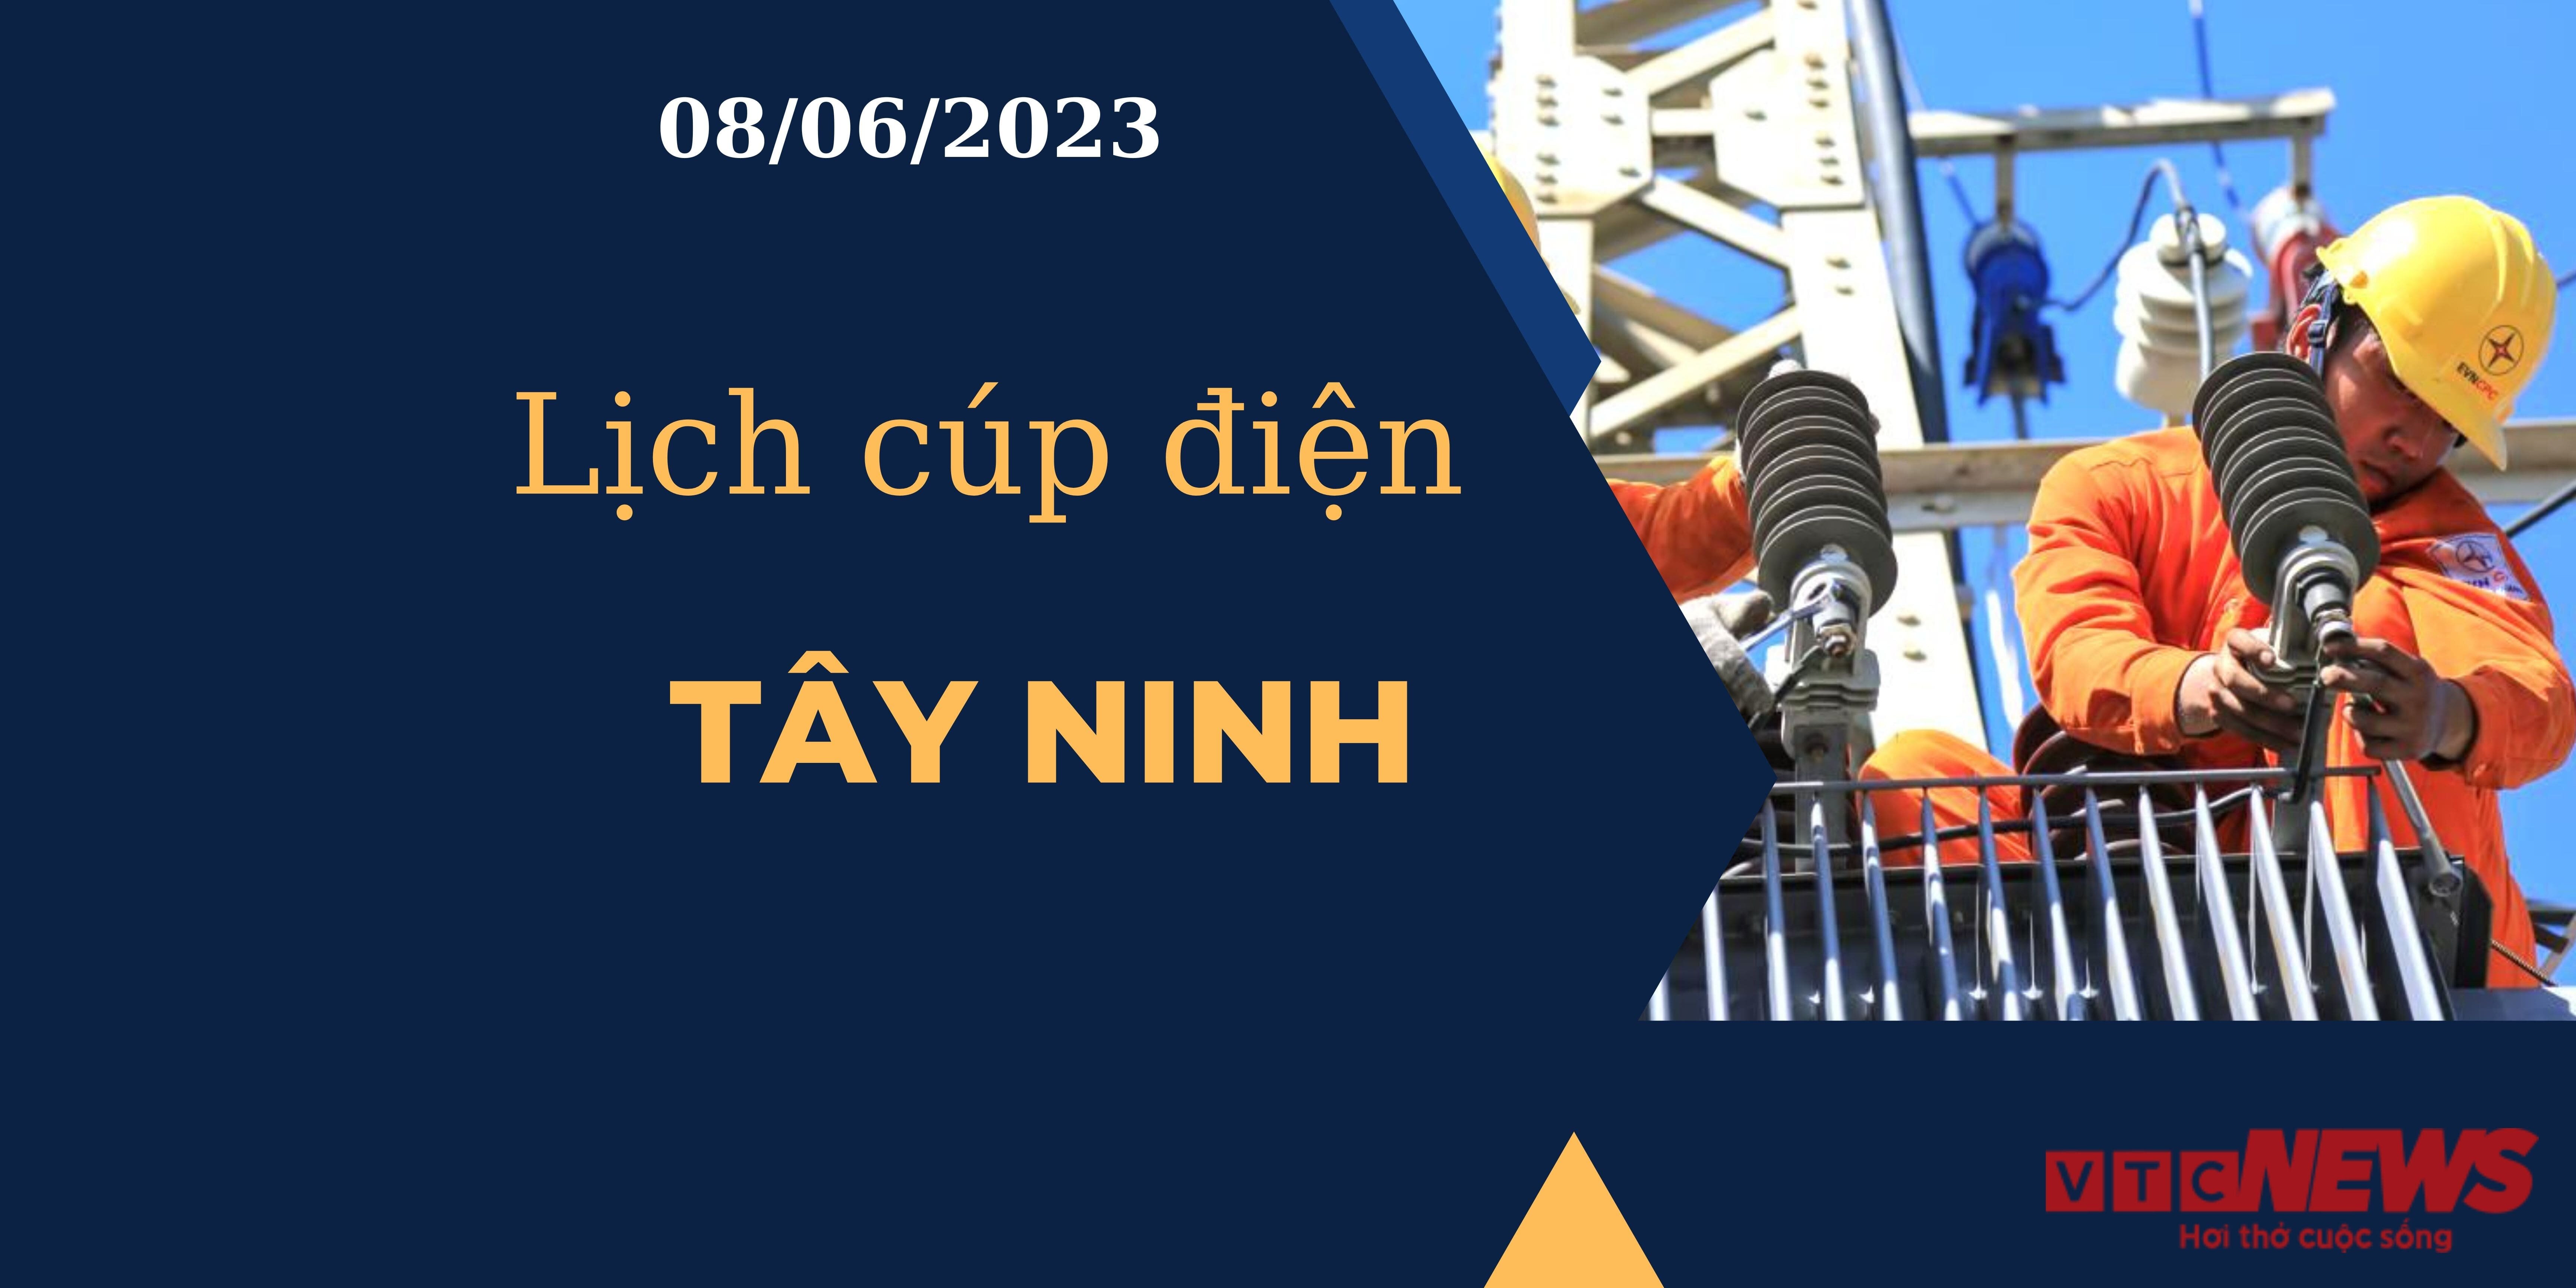 Lịch cúp điện hôm nay ngày 08/06/2023 tại Tây Ninh - 1